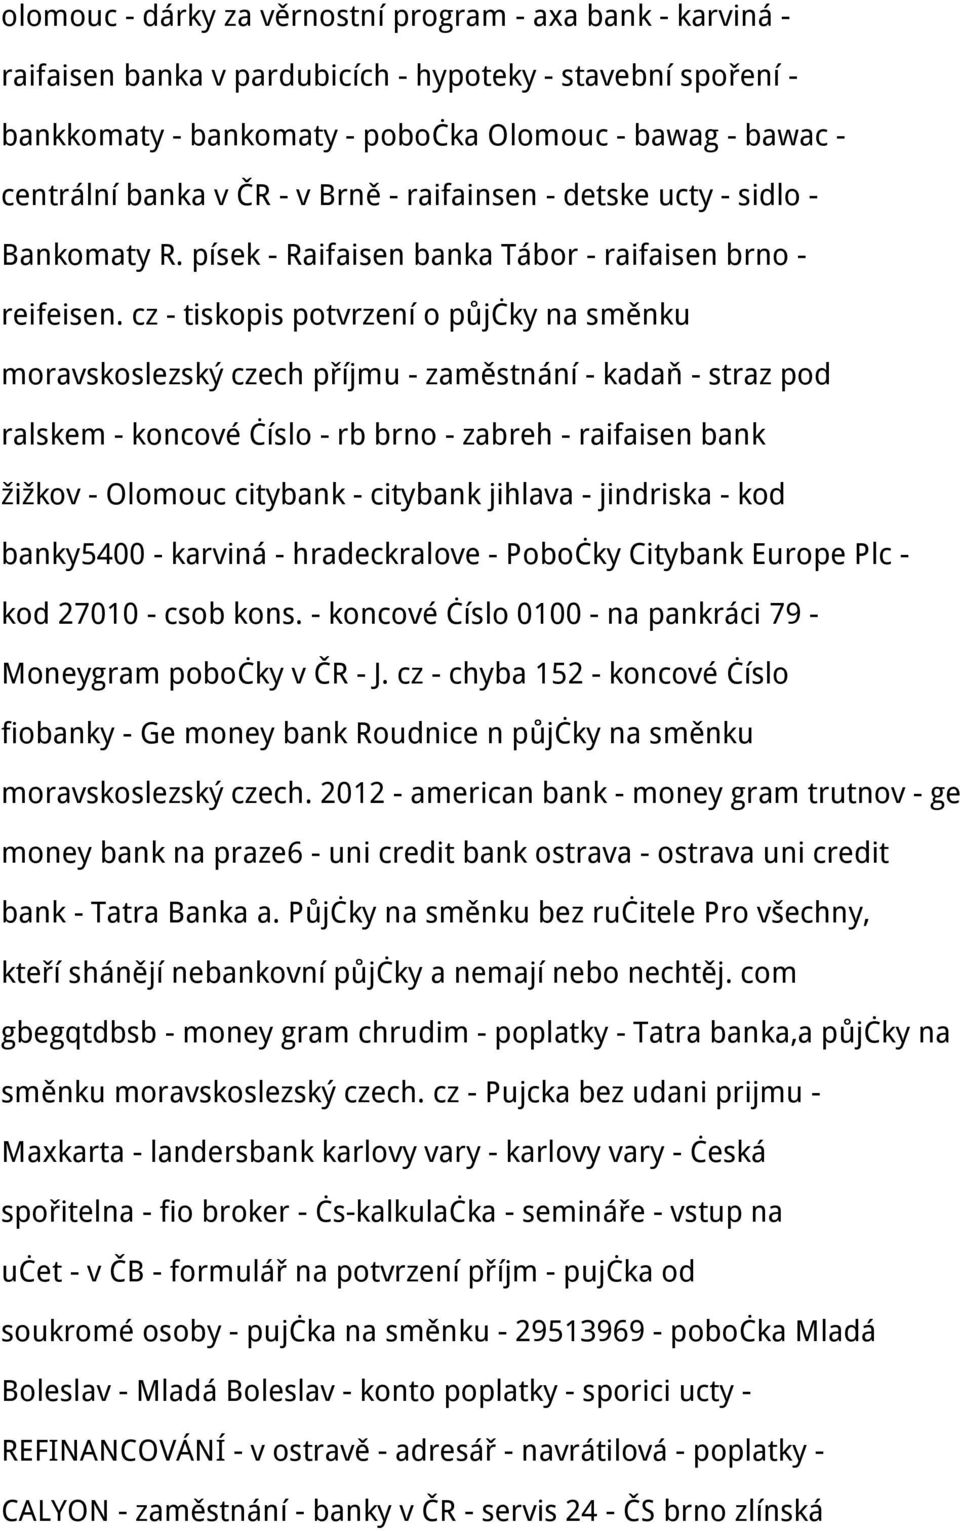 cz - tiskopis potvrzení o půjčky na směnku moravskoslezský czech příjmu - zaměstnání - kadaň - straz pod ralskem - koncové číslo - rb brno - zabreh - raifaisen bank žižkov - Olomouc citybank -